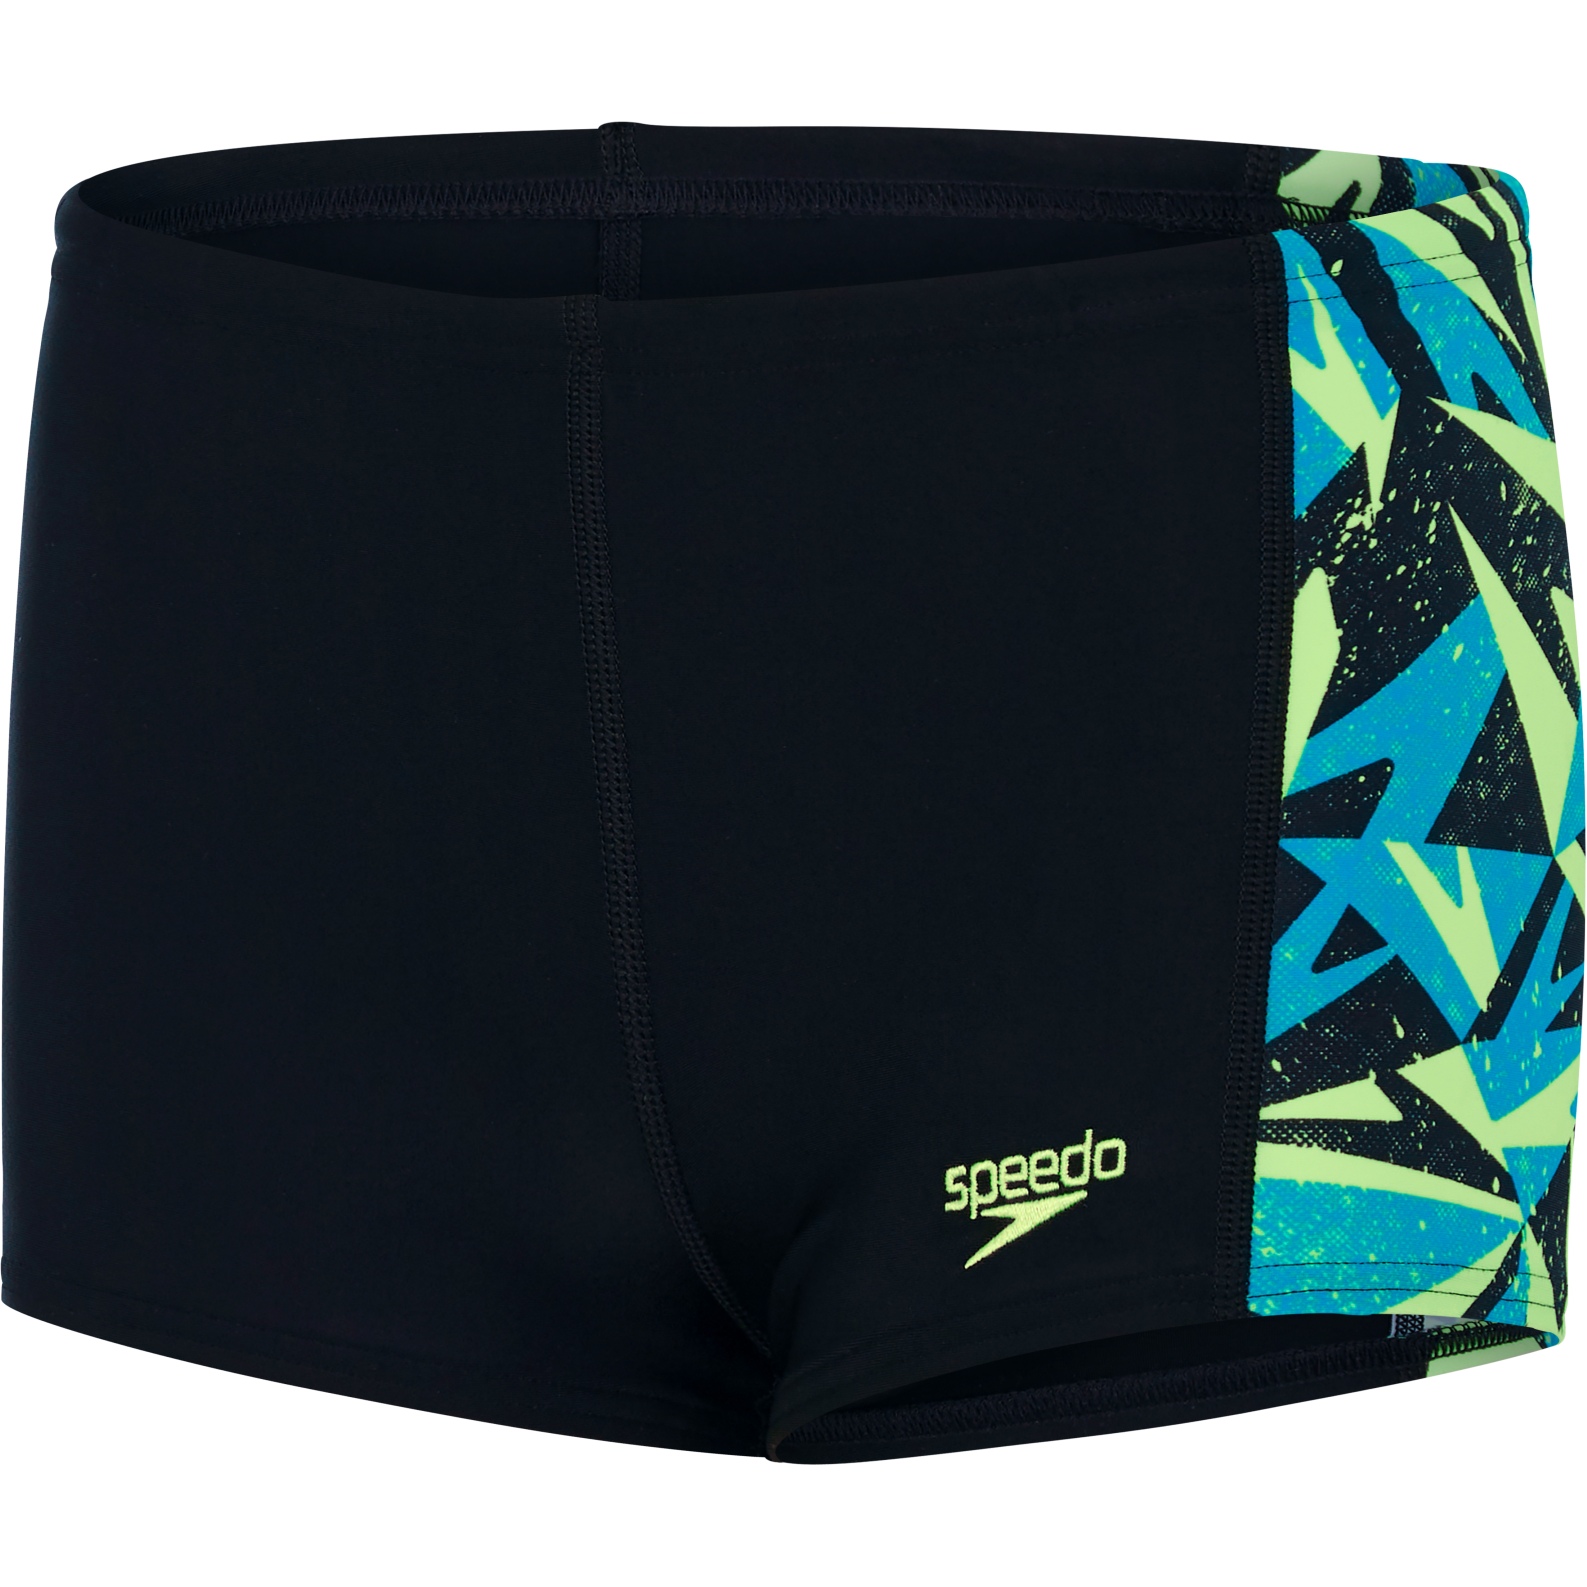 Produktbild von Speedo Hyperboom Panel Aquashort Kinder - black/pool/bright zest